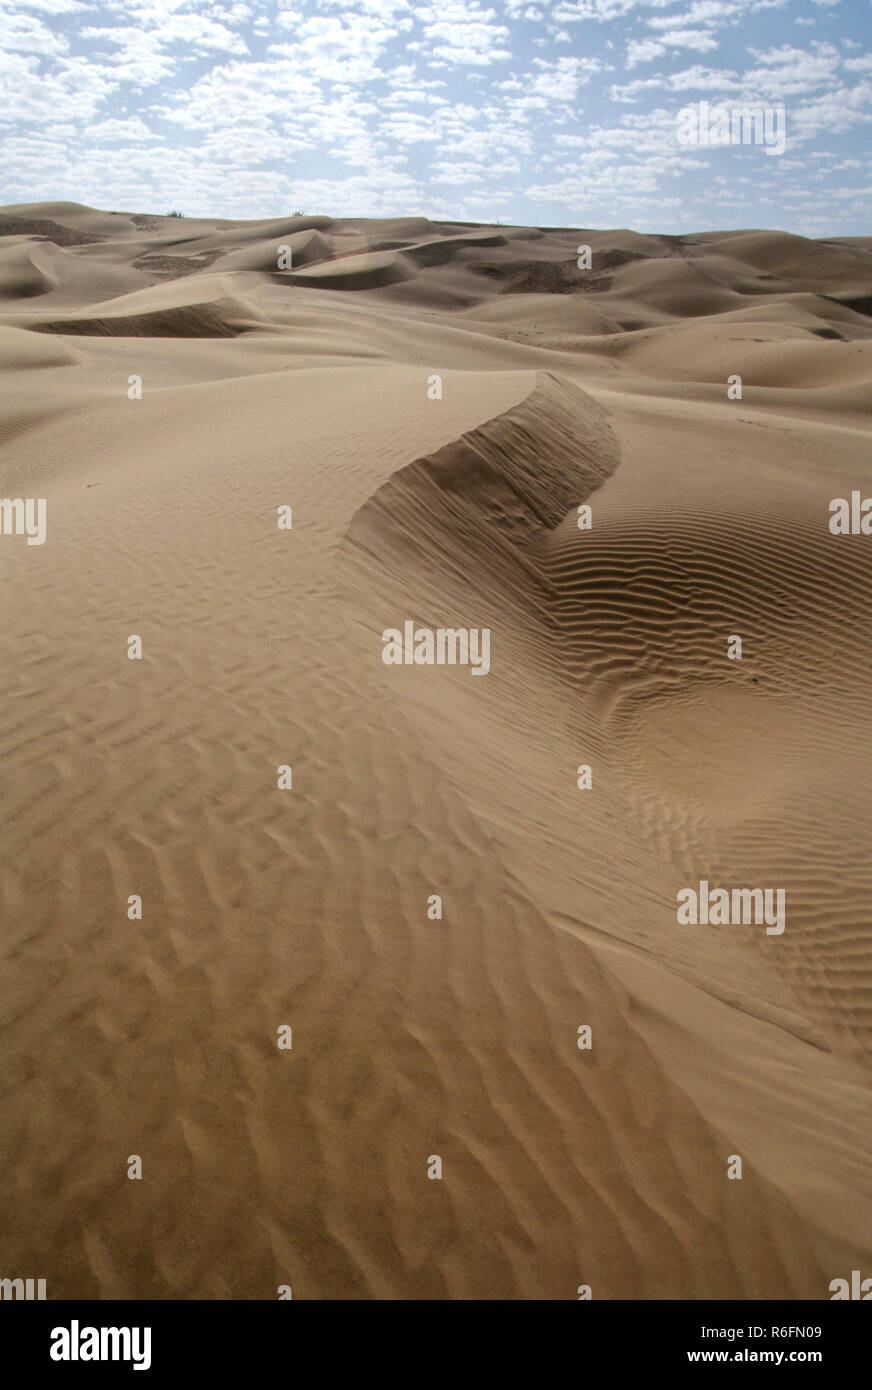 Thar Desert Plants in Sand Dunes, Sam Sand Dunes, Jaisalmer, Rajasthan, India Stock Photo